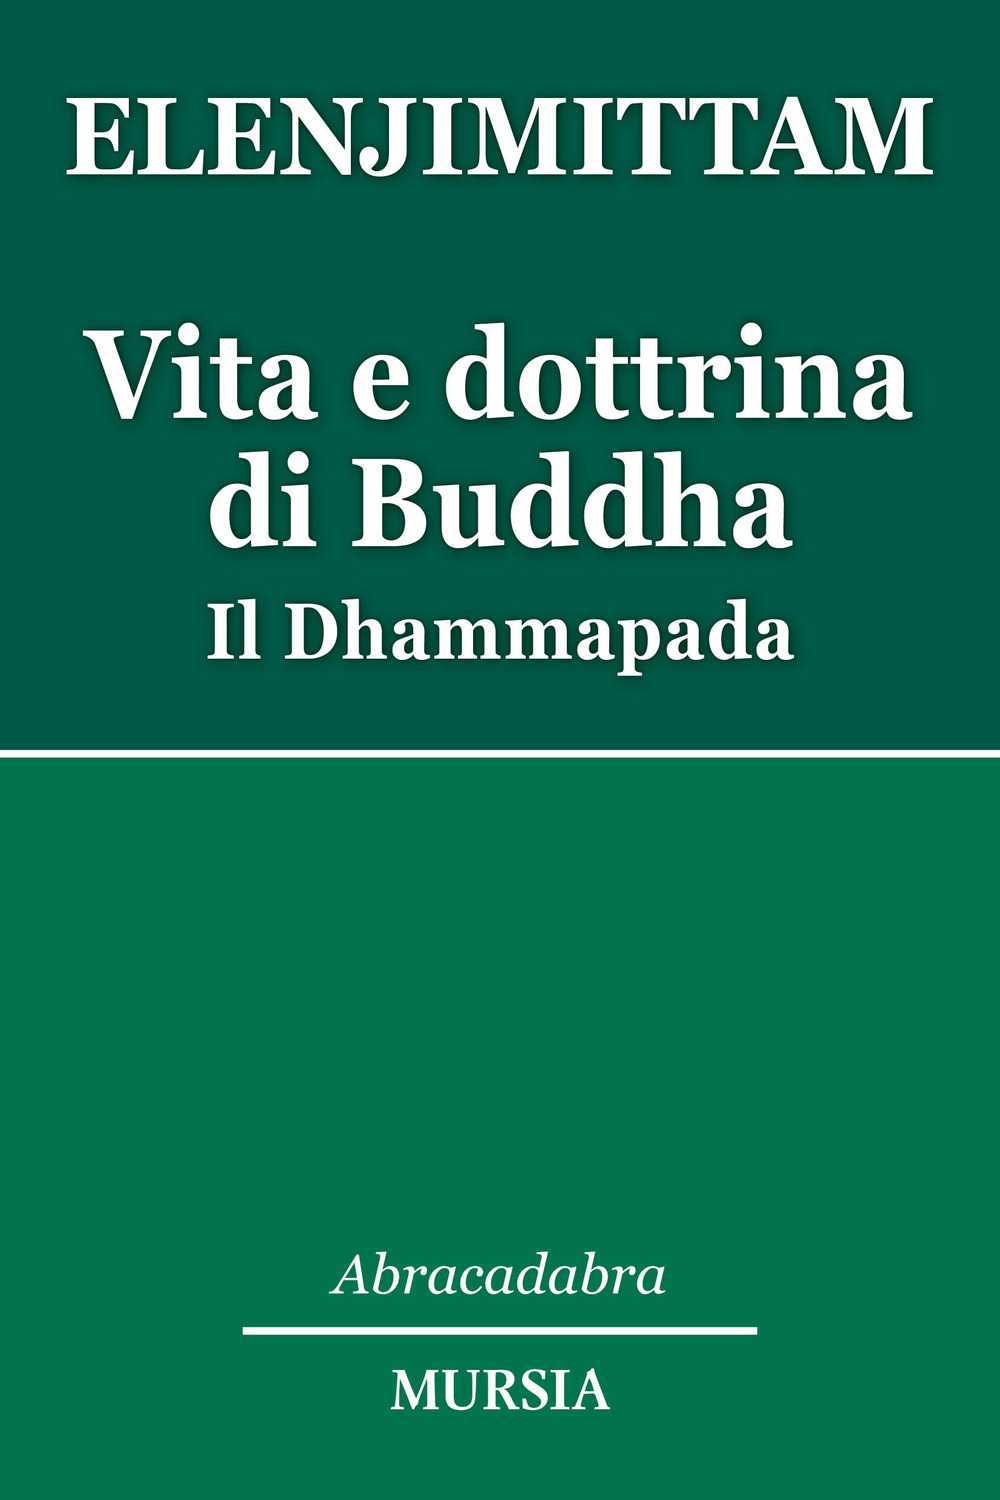 Image of Vita e dottrina di Buddha. Il Dhammapada